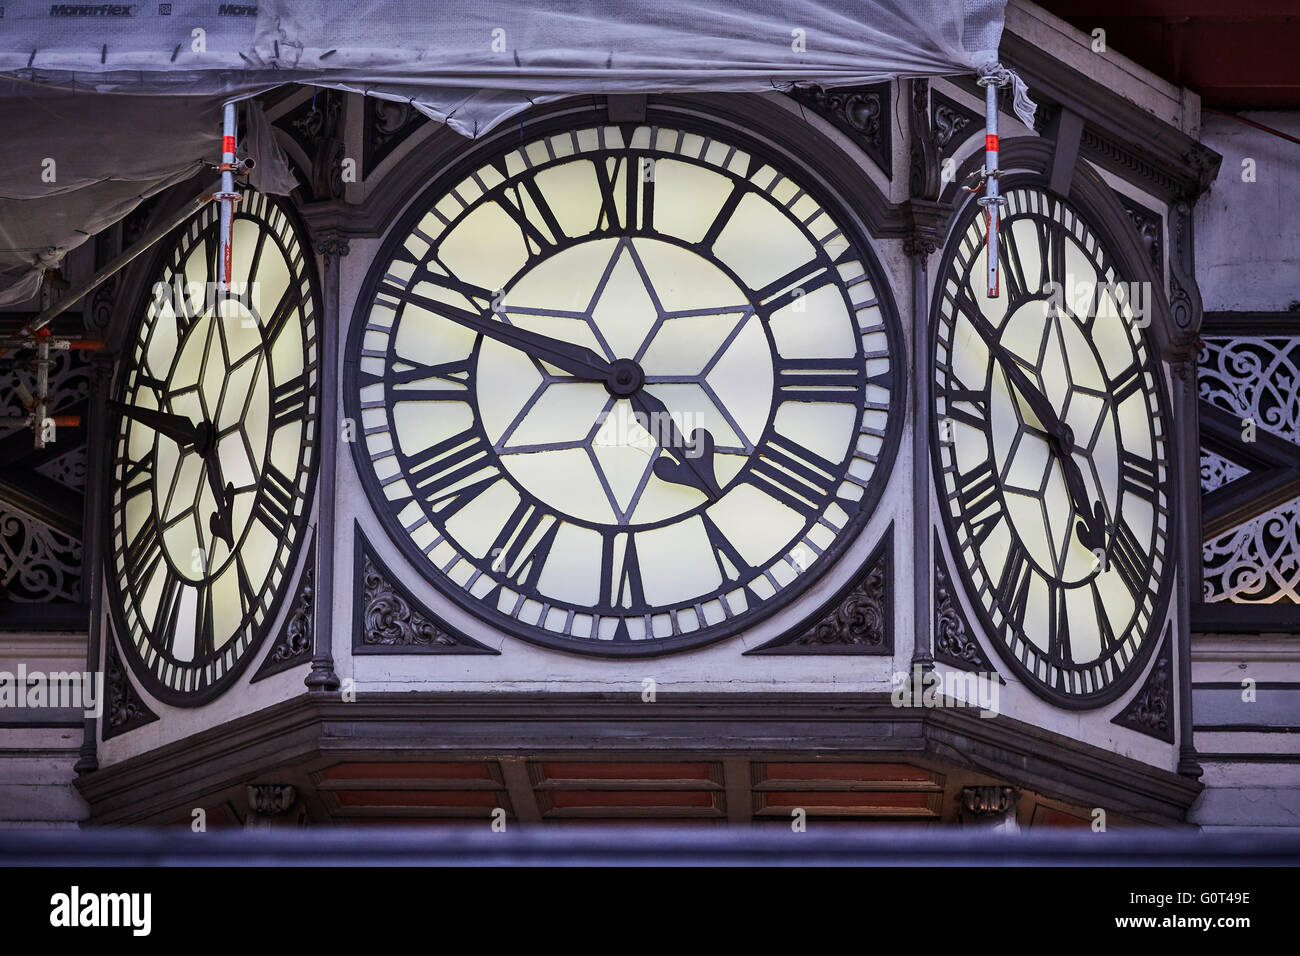 A Londra la stazione ferroviaria di Paddington grande orologio 3 facce numero romano I ponteggi restauro orologio tempo le mani dicendo Foto Stock